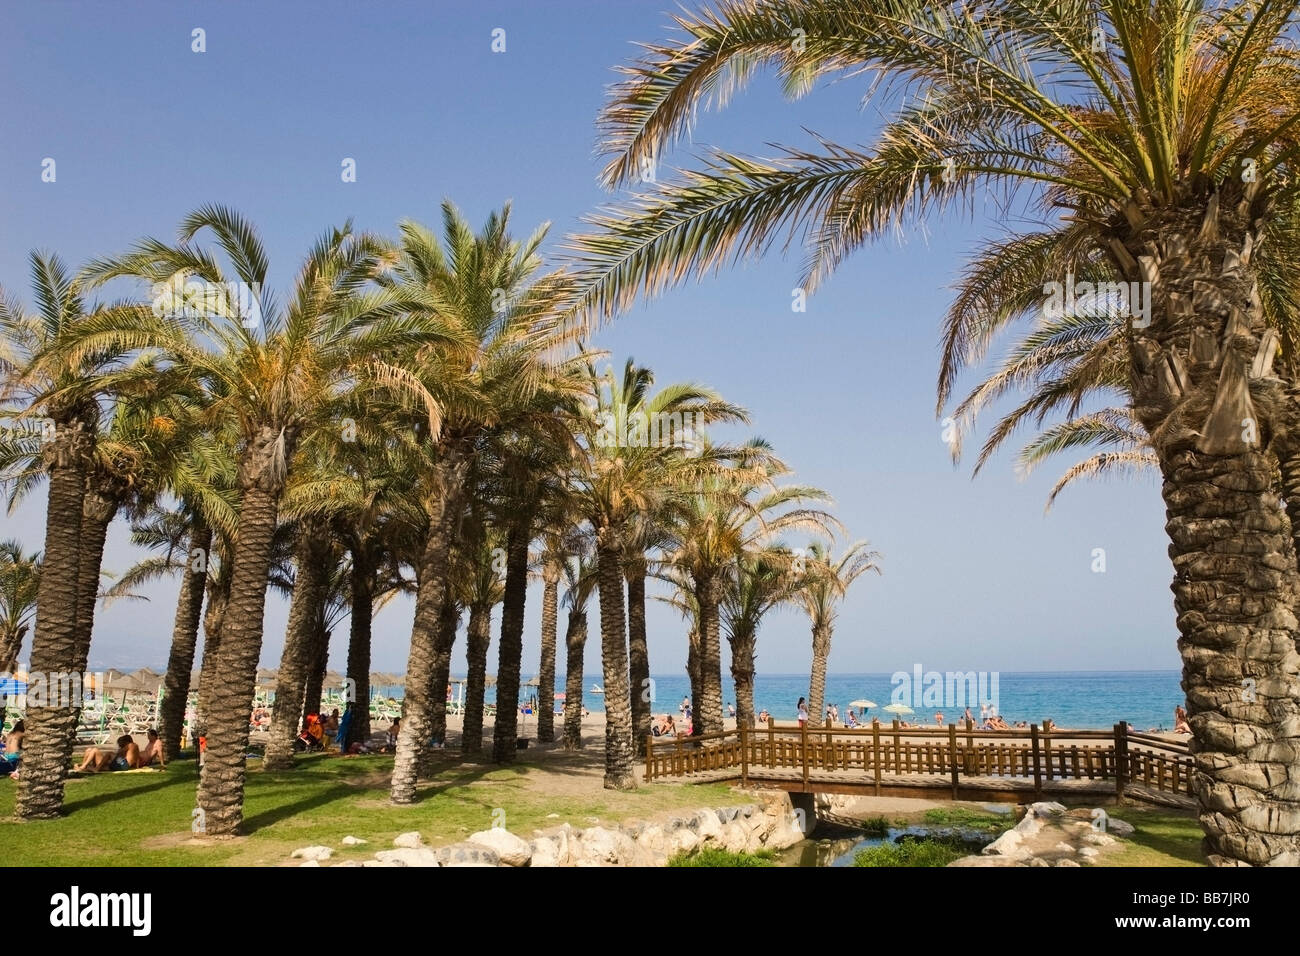 Palmiers sur la plage Playamar, Torremolinos, Malaga Province, Costa del Sol, Espagne Banque D'Images